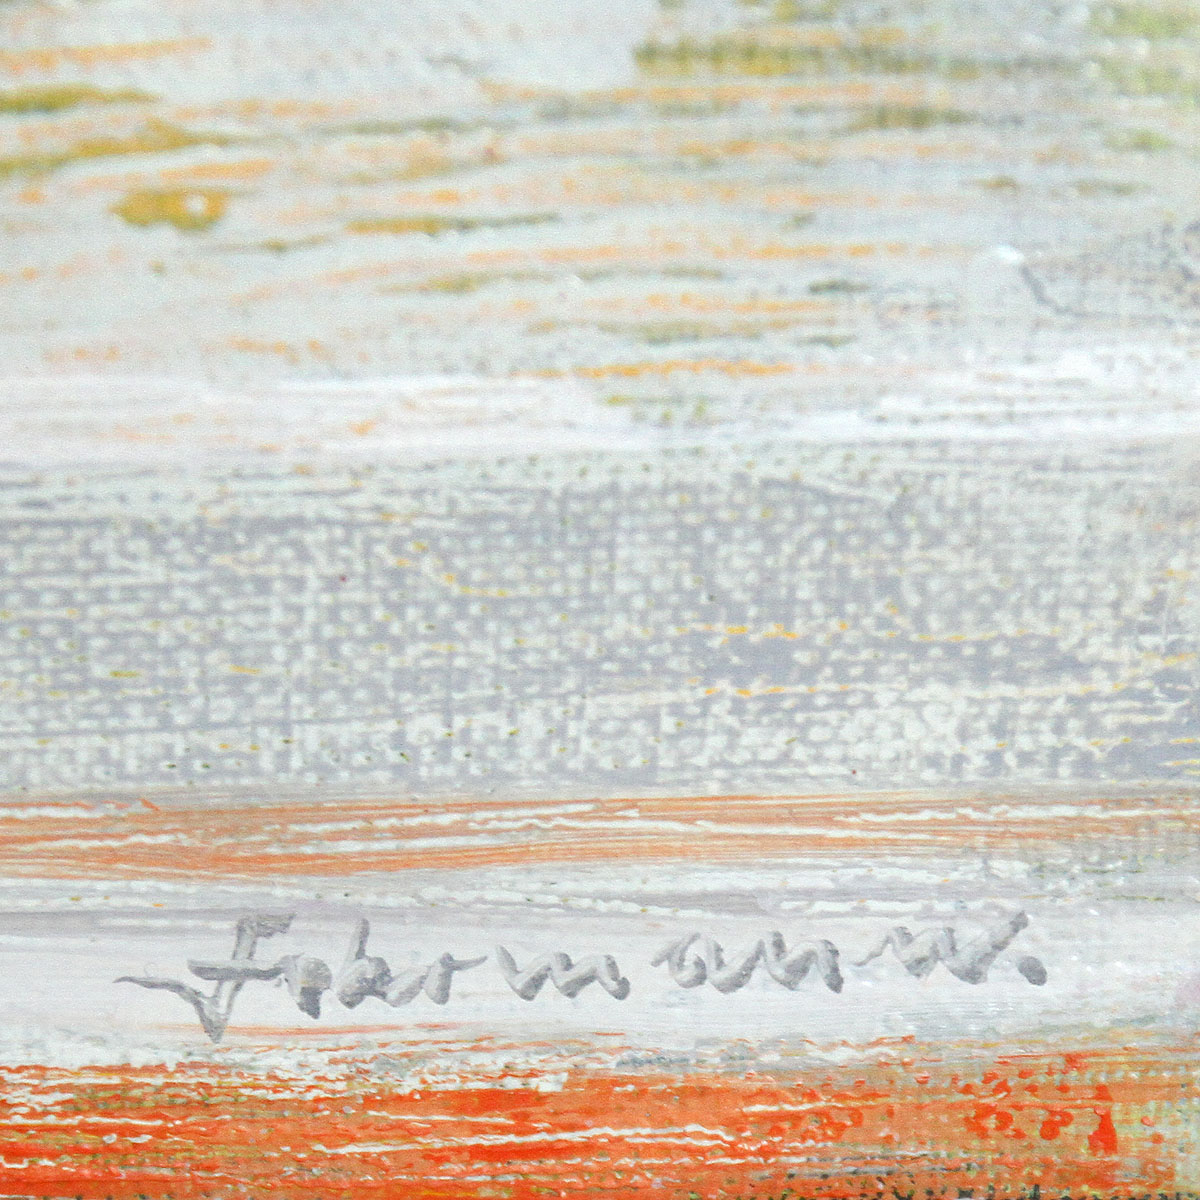 Zeitgenössische Malerei von Uwe Fehrmann: "Aufbruch" (A)